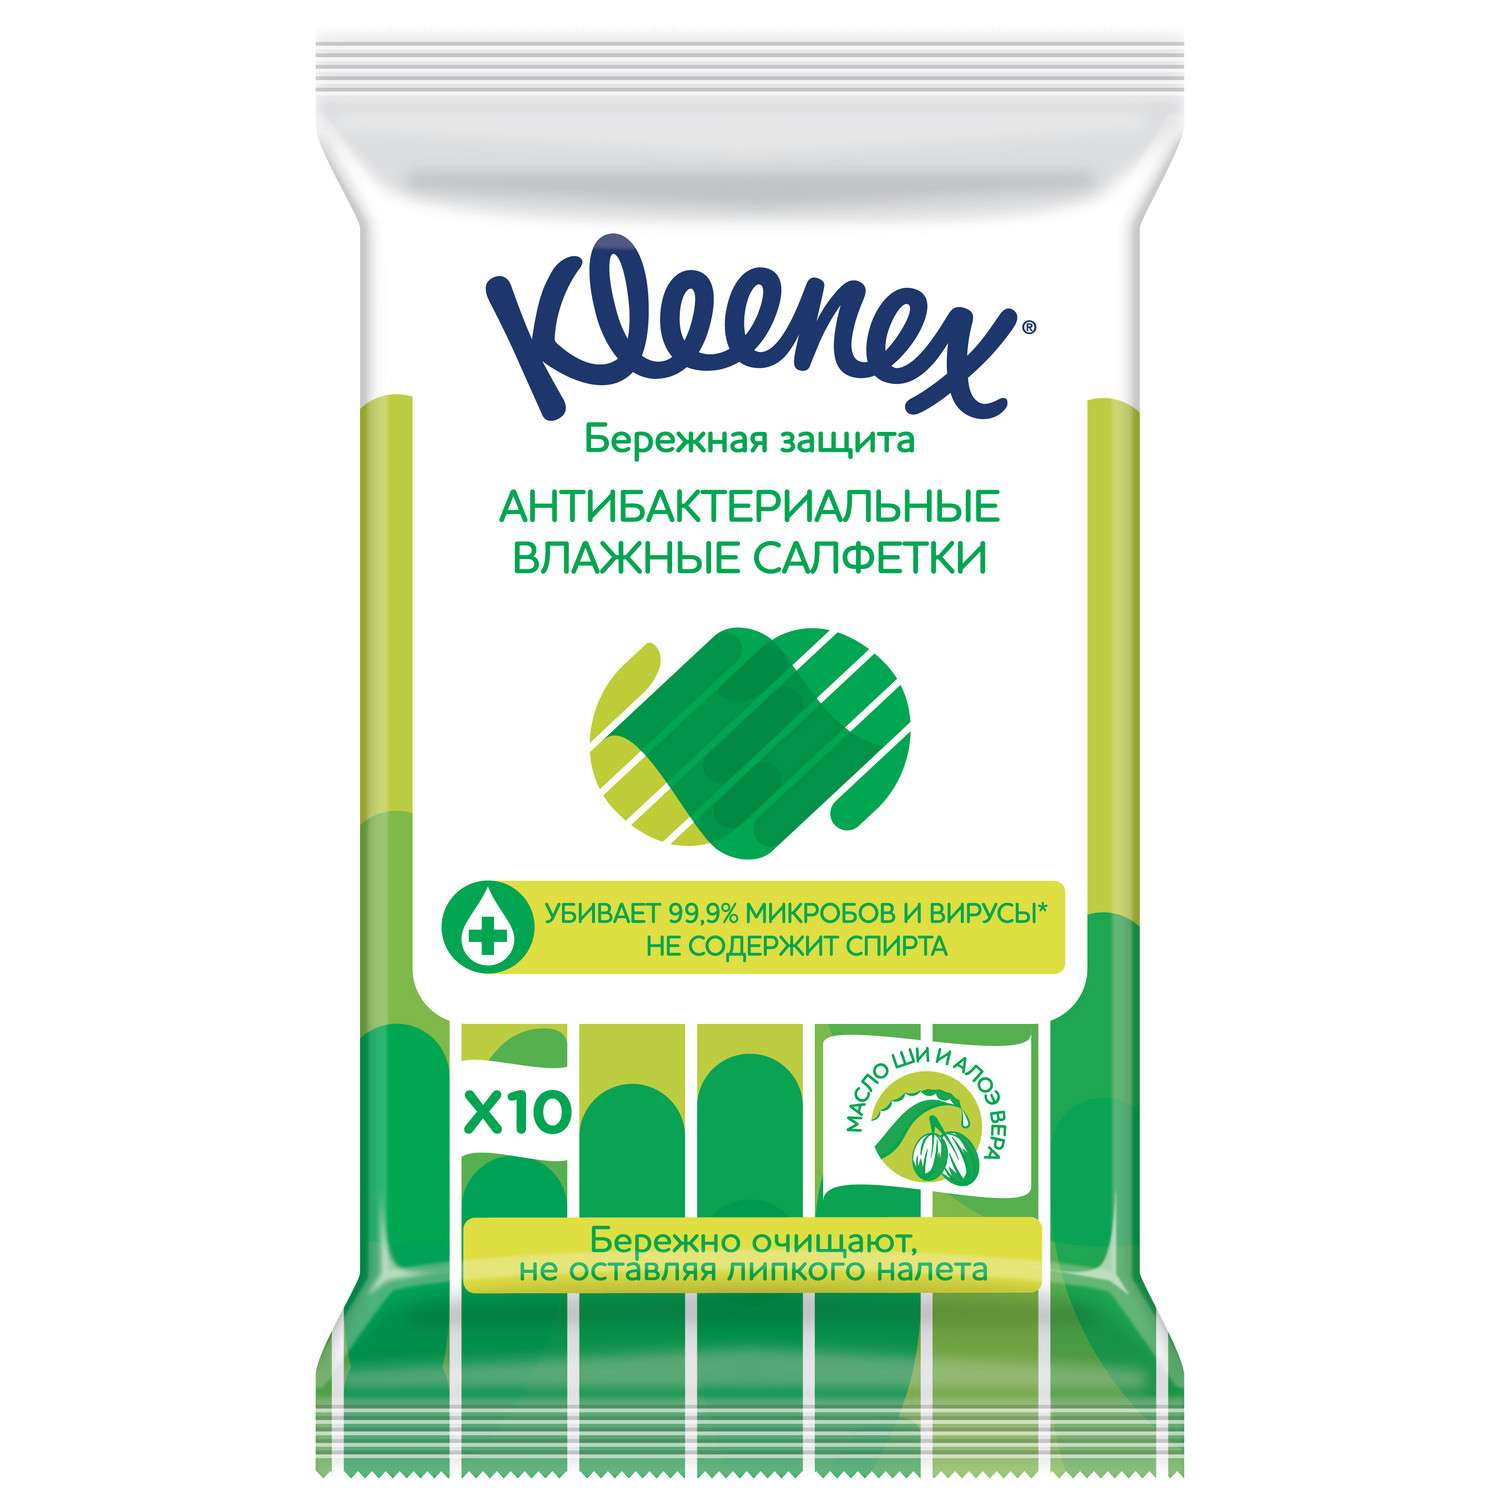 Салфетки влажные Kleenex антибактериальные 10шт - фото 2